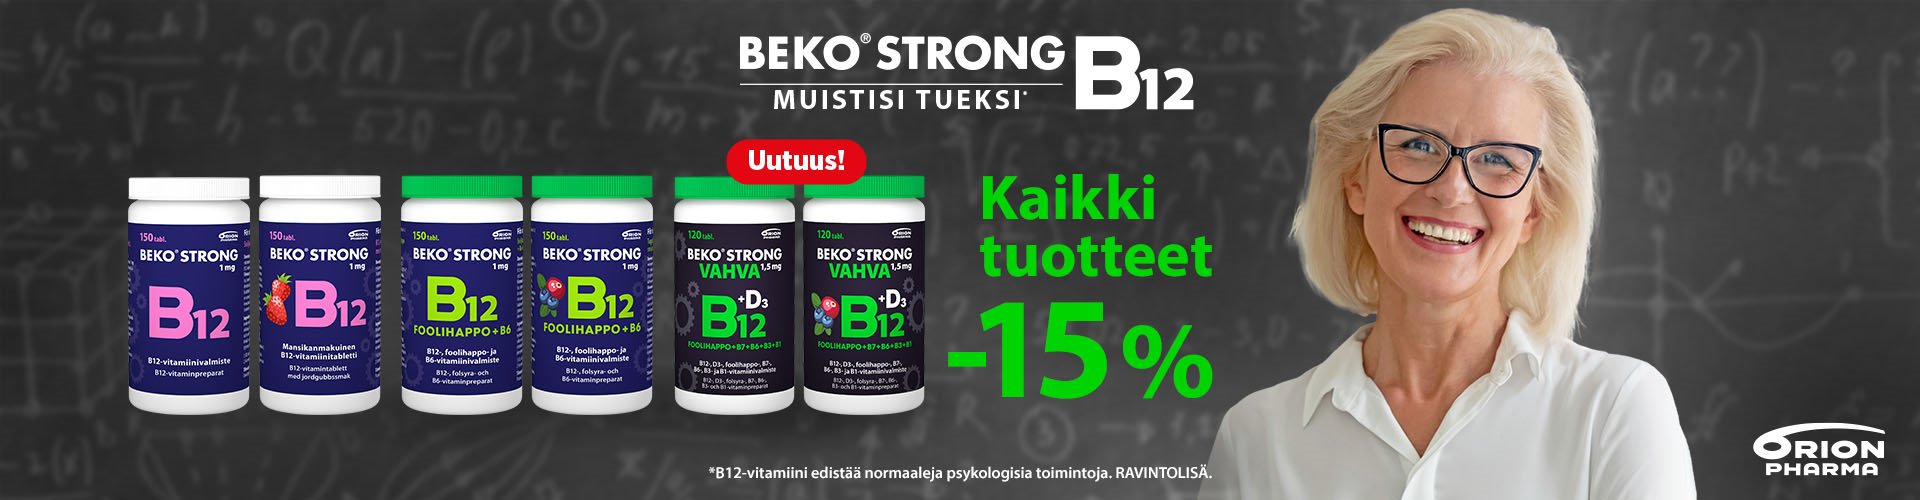 beko strong b 12 vitamiini muistin tueksi purutabletti nieltävä tabletti 150